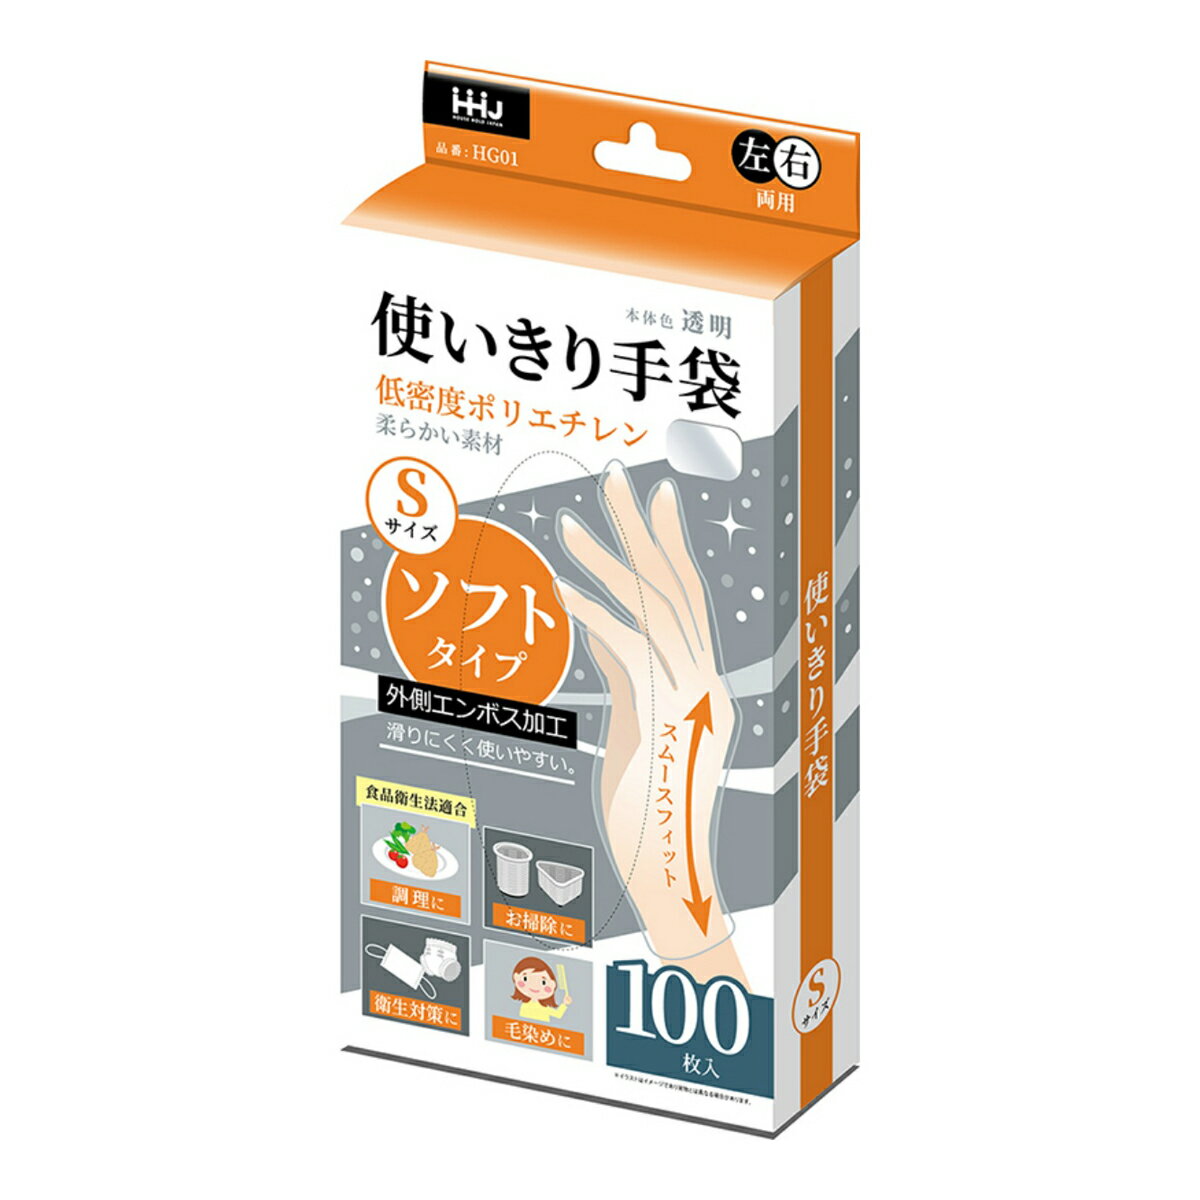 ハウスホールドジャパン HG01 手袋 ソフトタイプ 透明 Sサイズ 100枚入